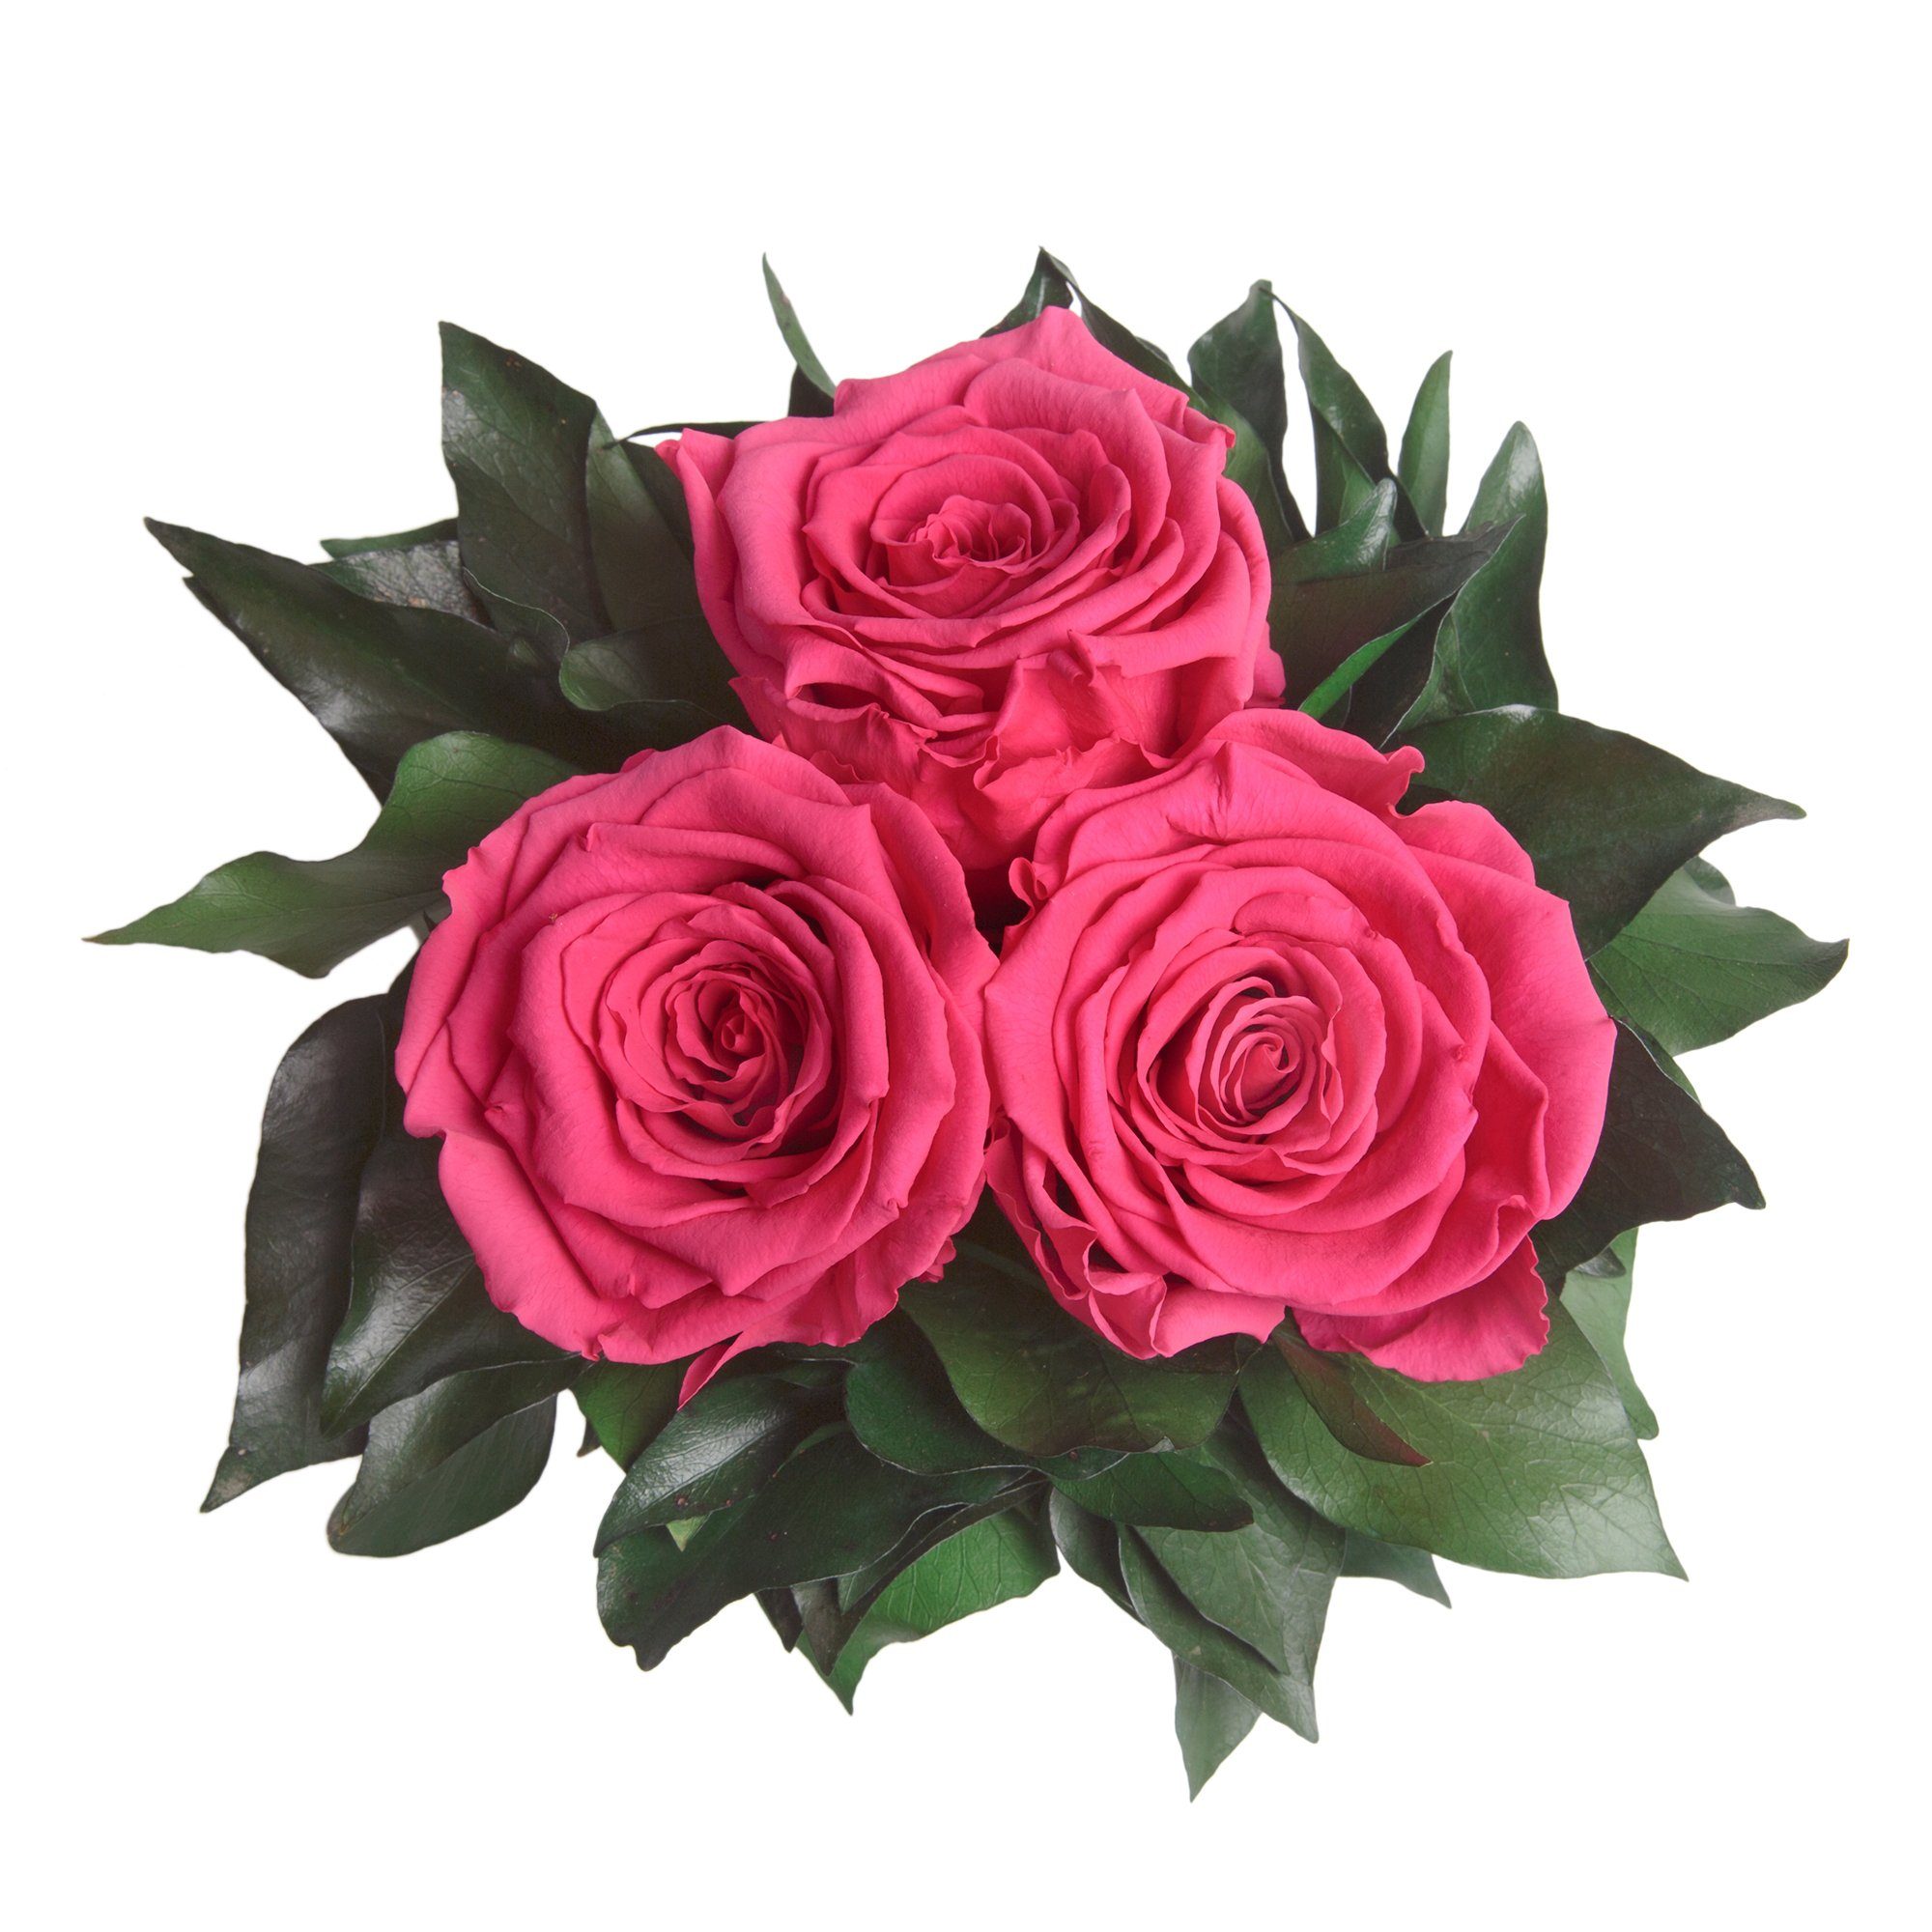 Kunstorchidee 3 Infinity silberfarbene Rose Rose, 15 Pink zu Deko Wohnzimmer Blumenstrauß 3 Rosen ROSEMARIE cm, Heidelberg, Vase haltbar Höhe SCHULZ bis Jahre